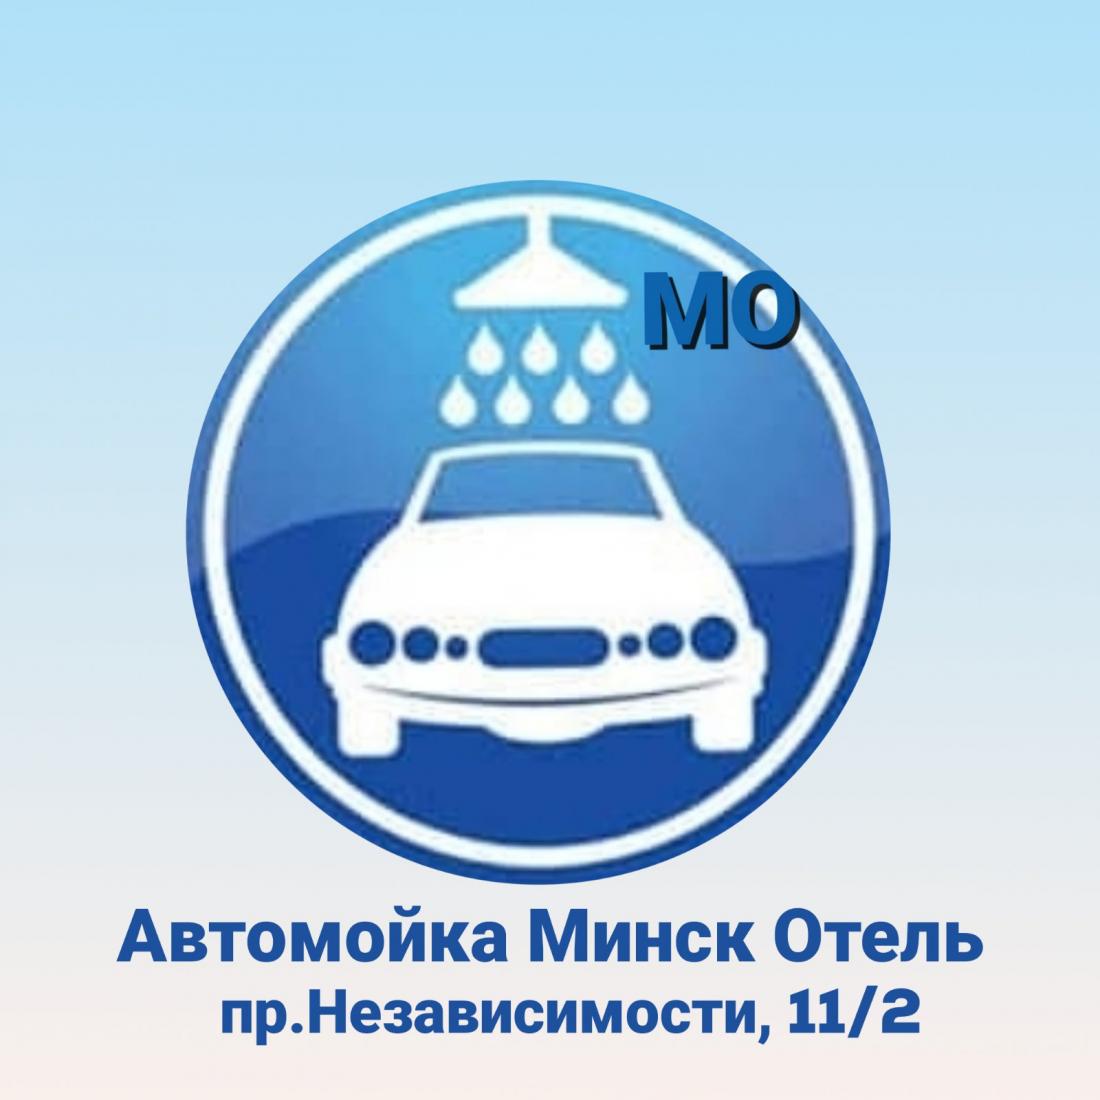 Автомоечные комплексы, бесконтактная мойка авто от 7,50 руб. на автомойке "Минск Отель"